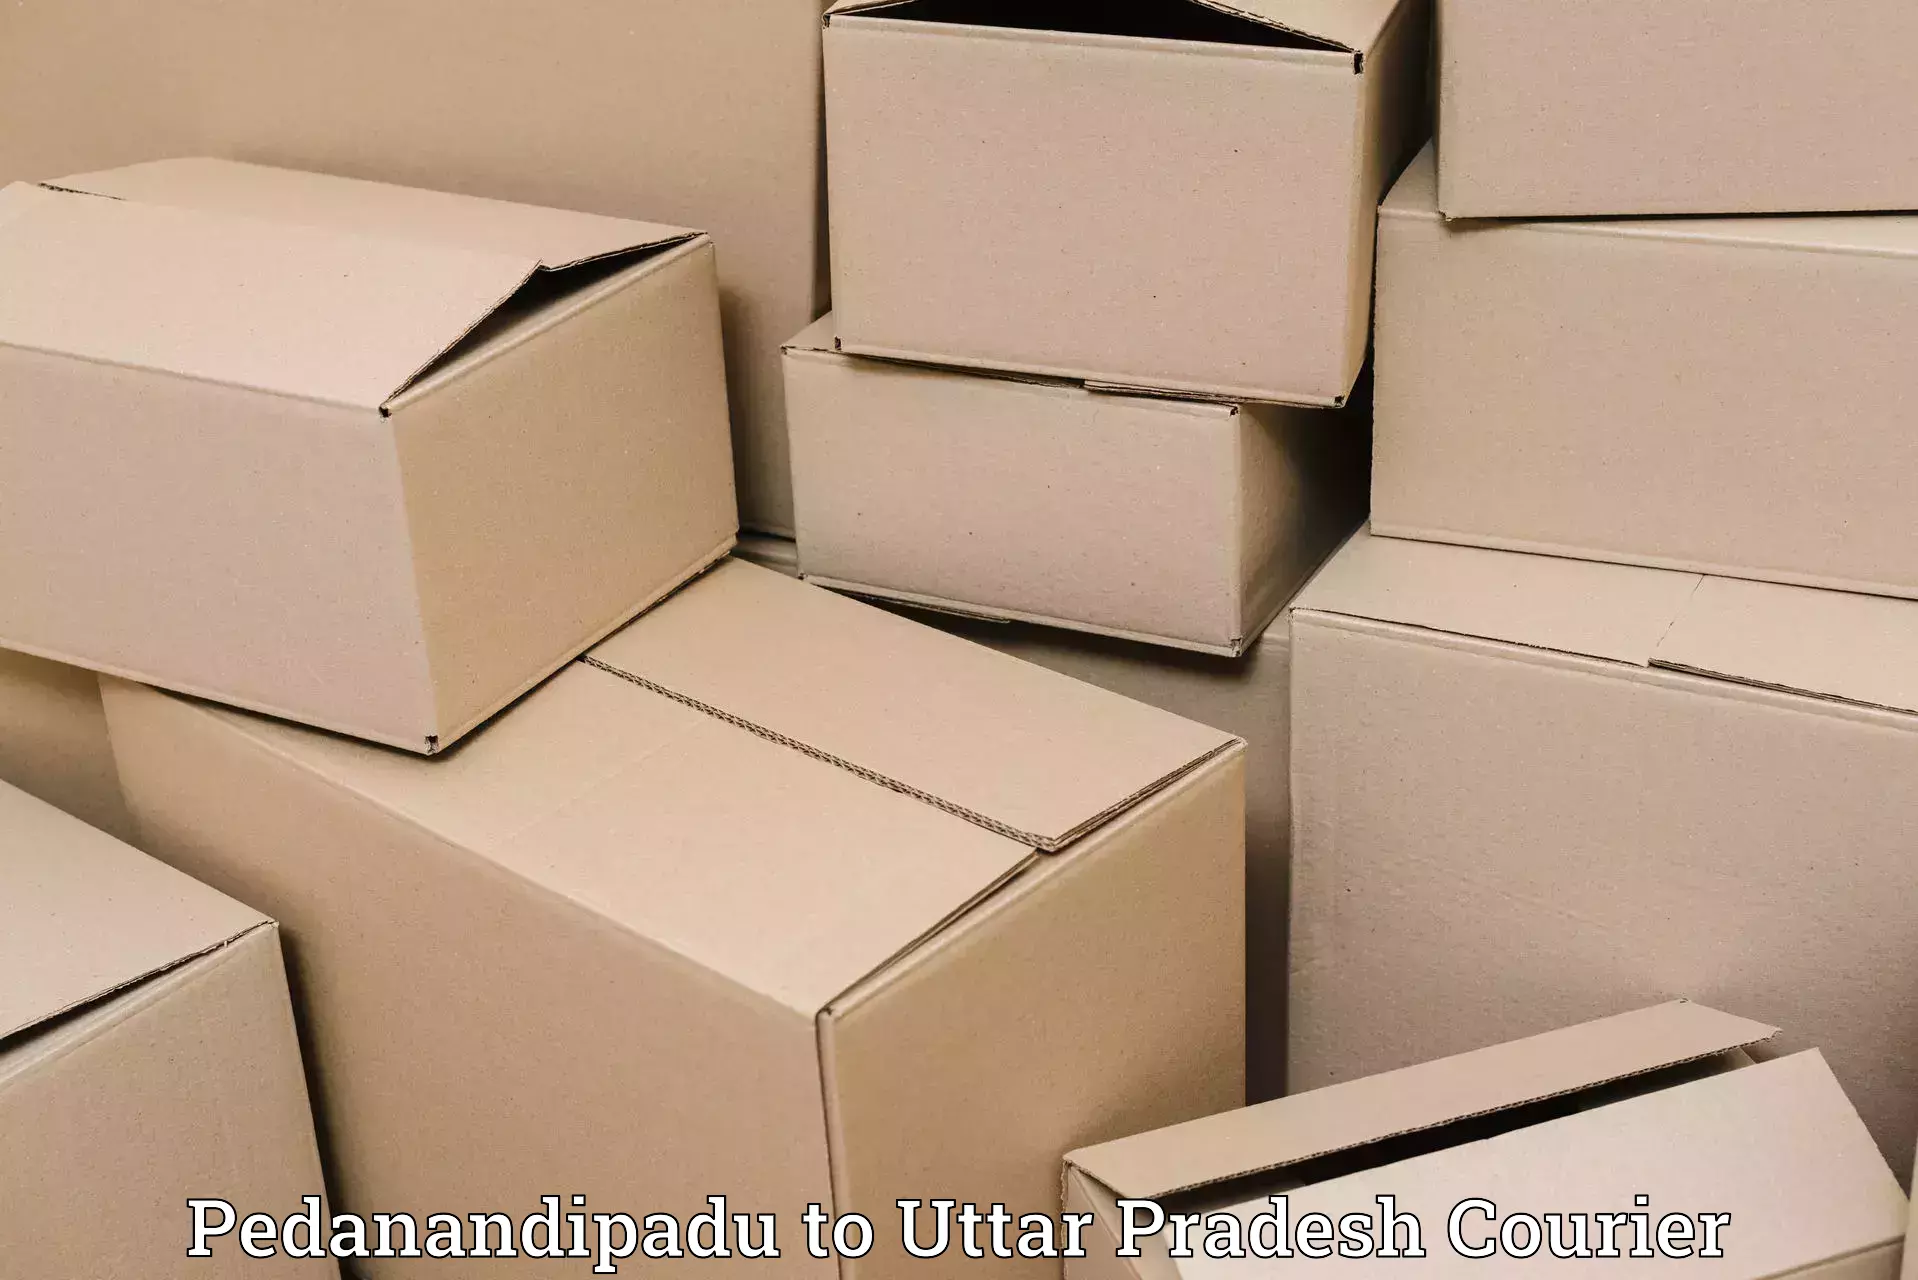 Automated shipping processes Pedanandipadu to Basti